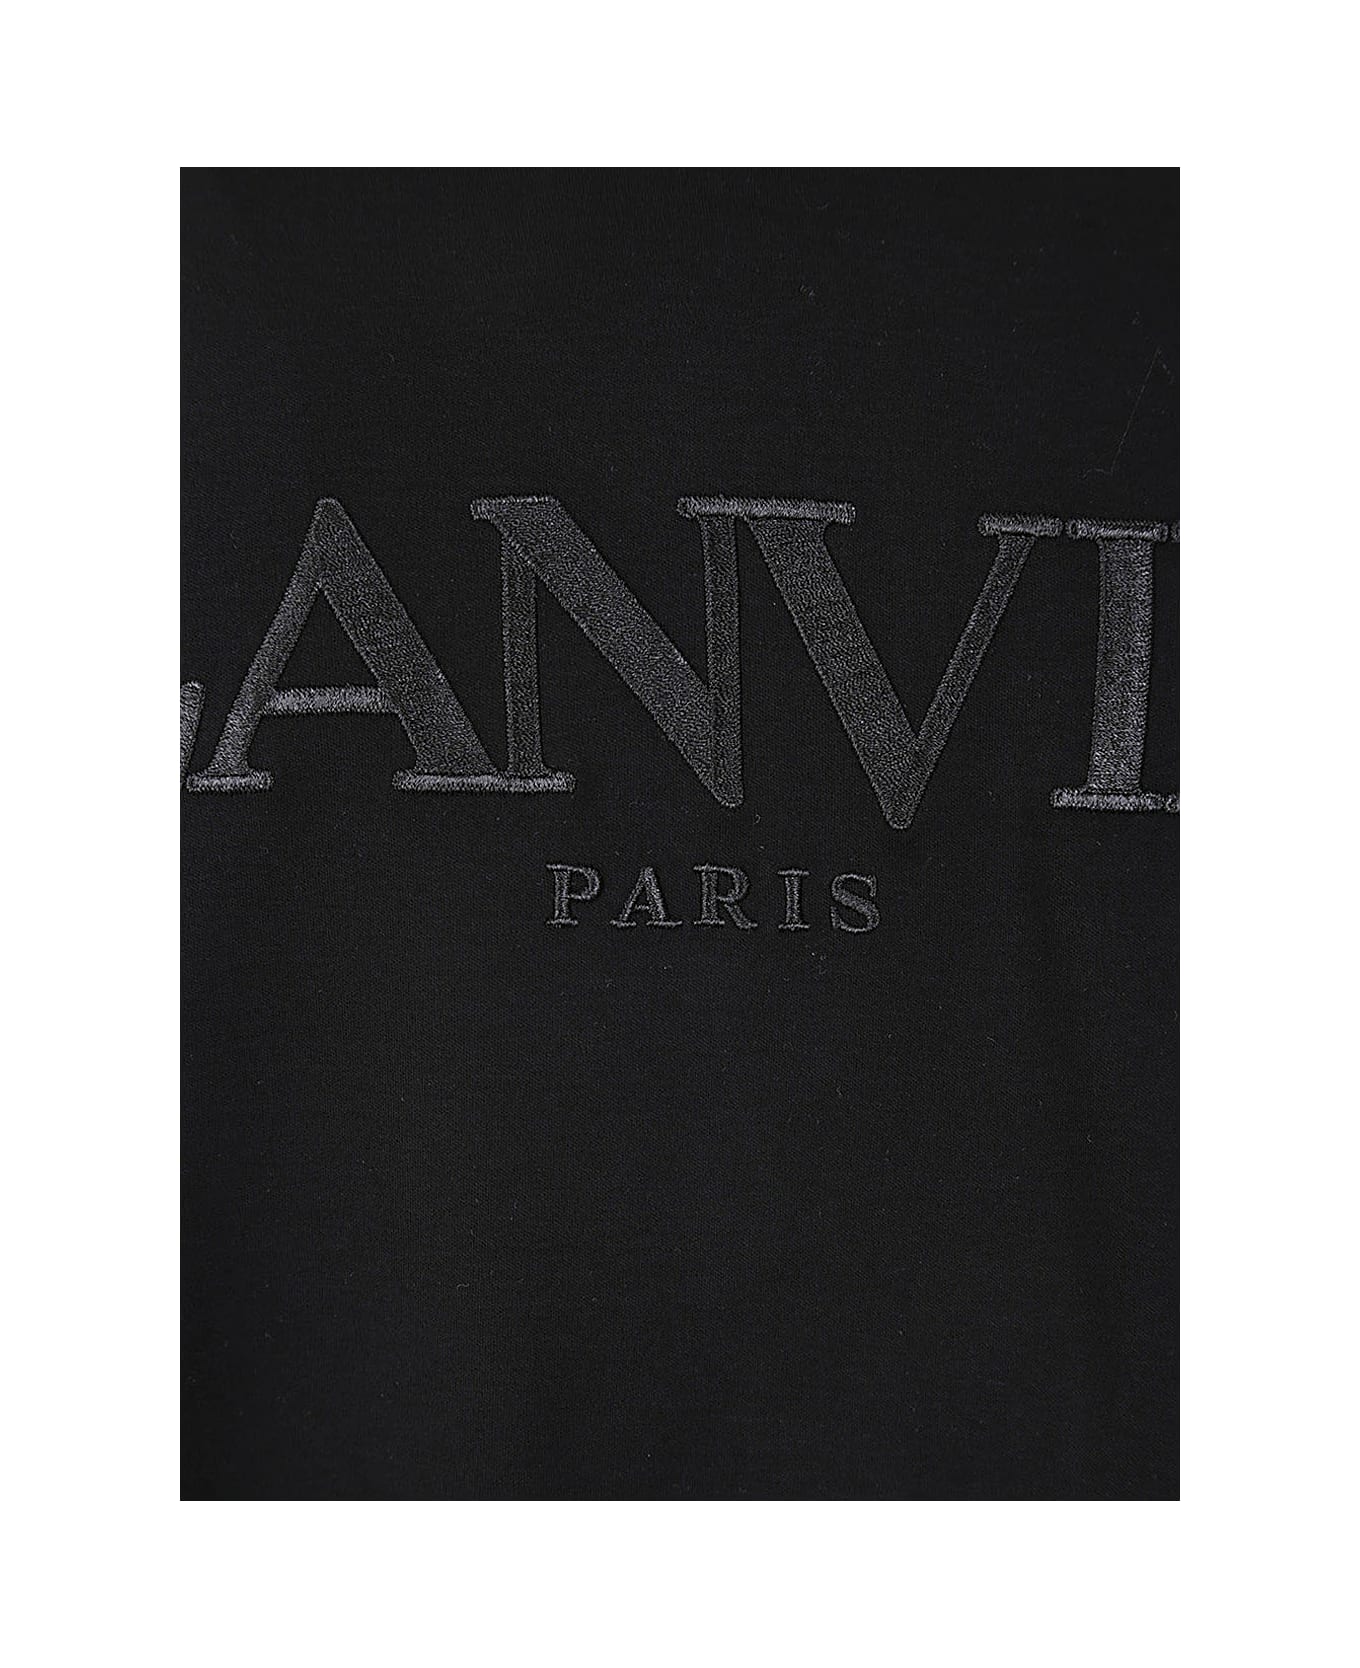 Lanvin Paris Oversized T-shirt - Black シャツ